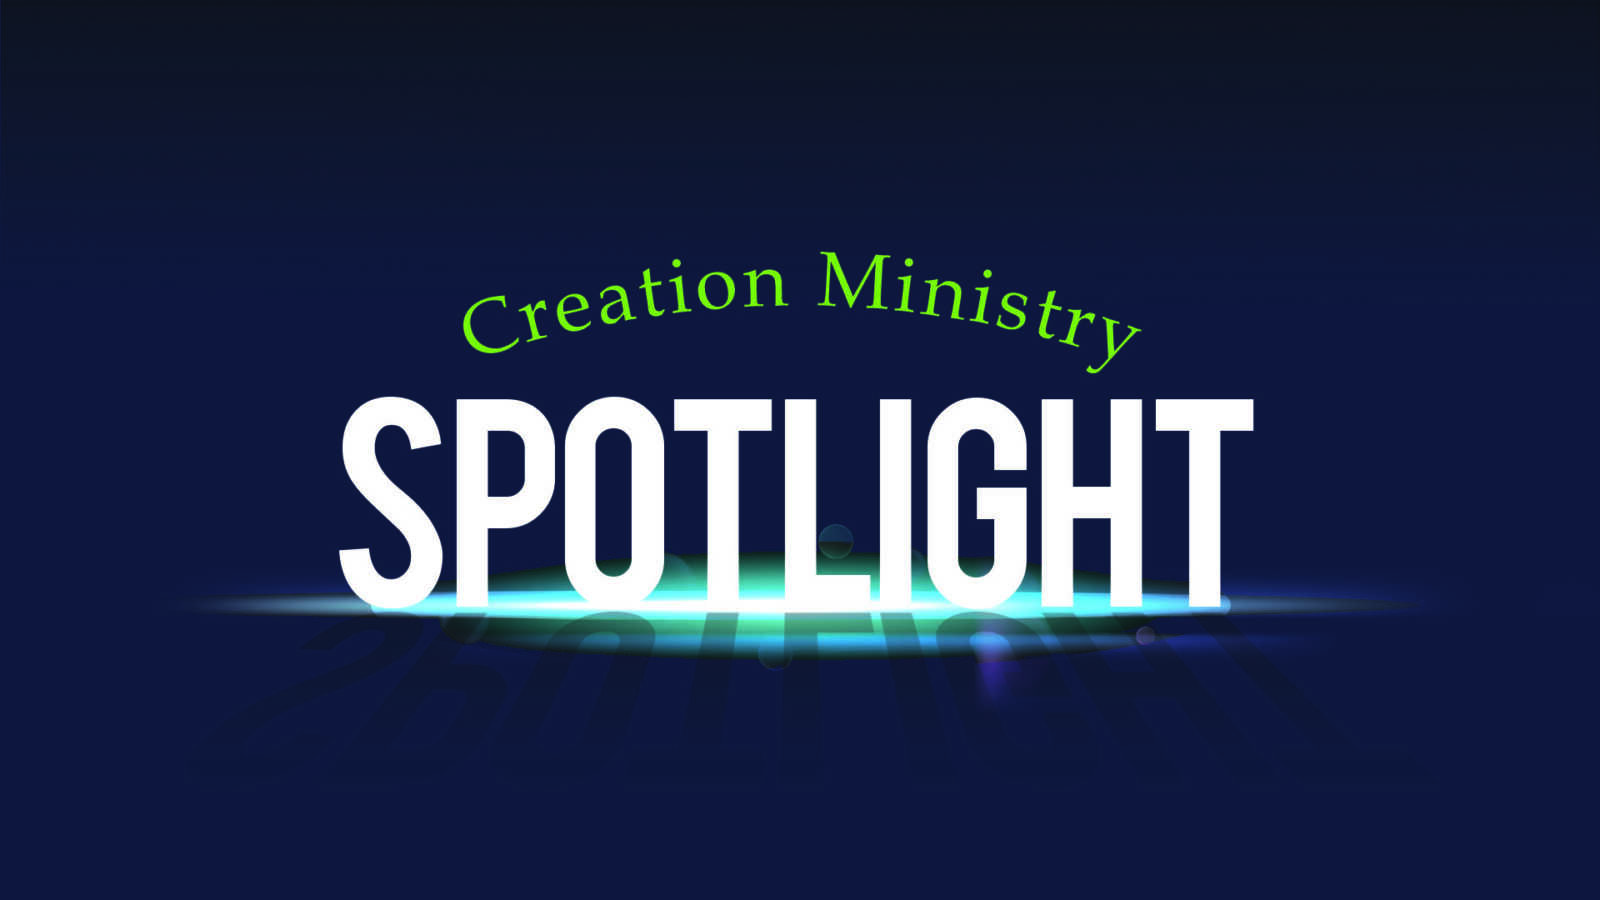 Creation Ministry Spotlight